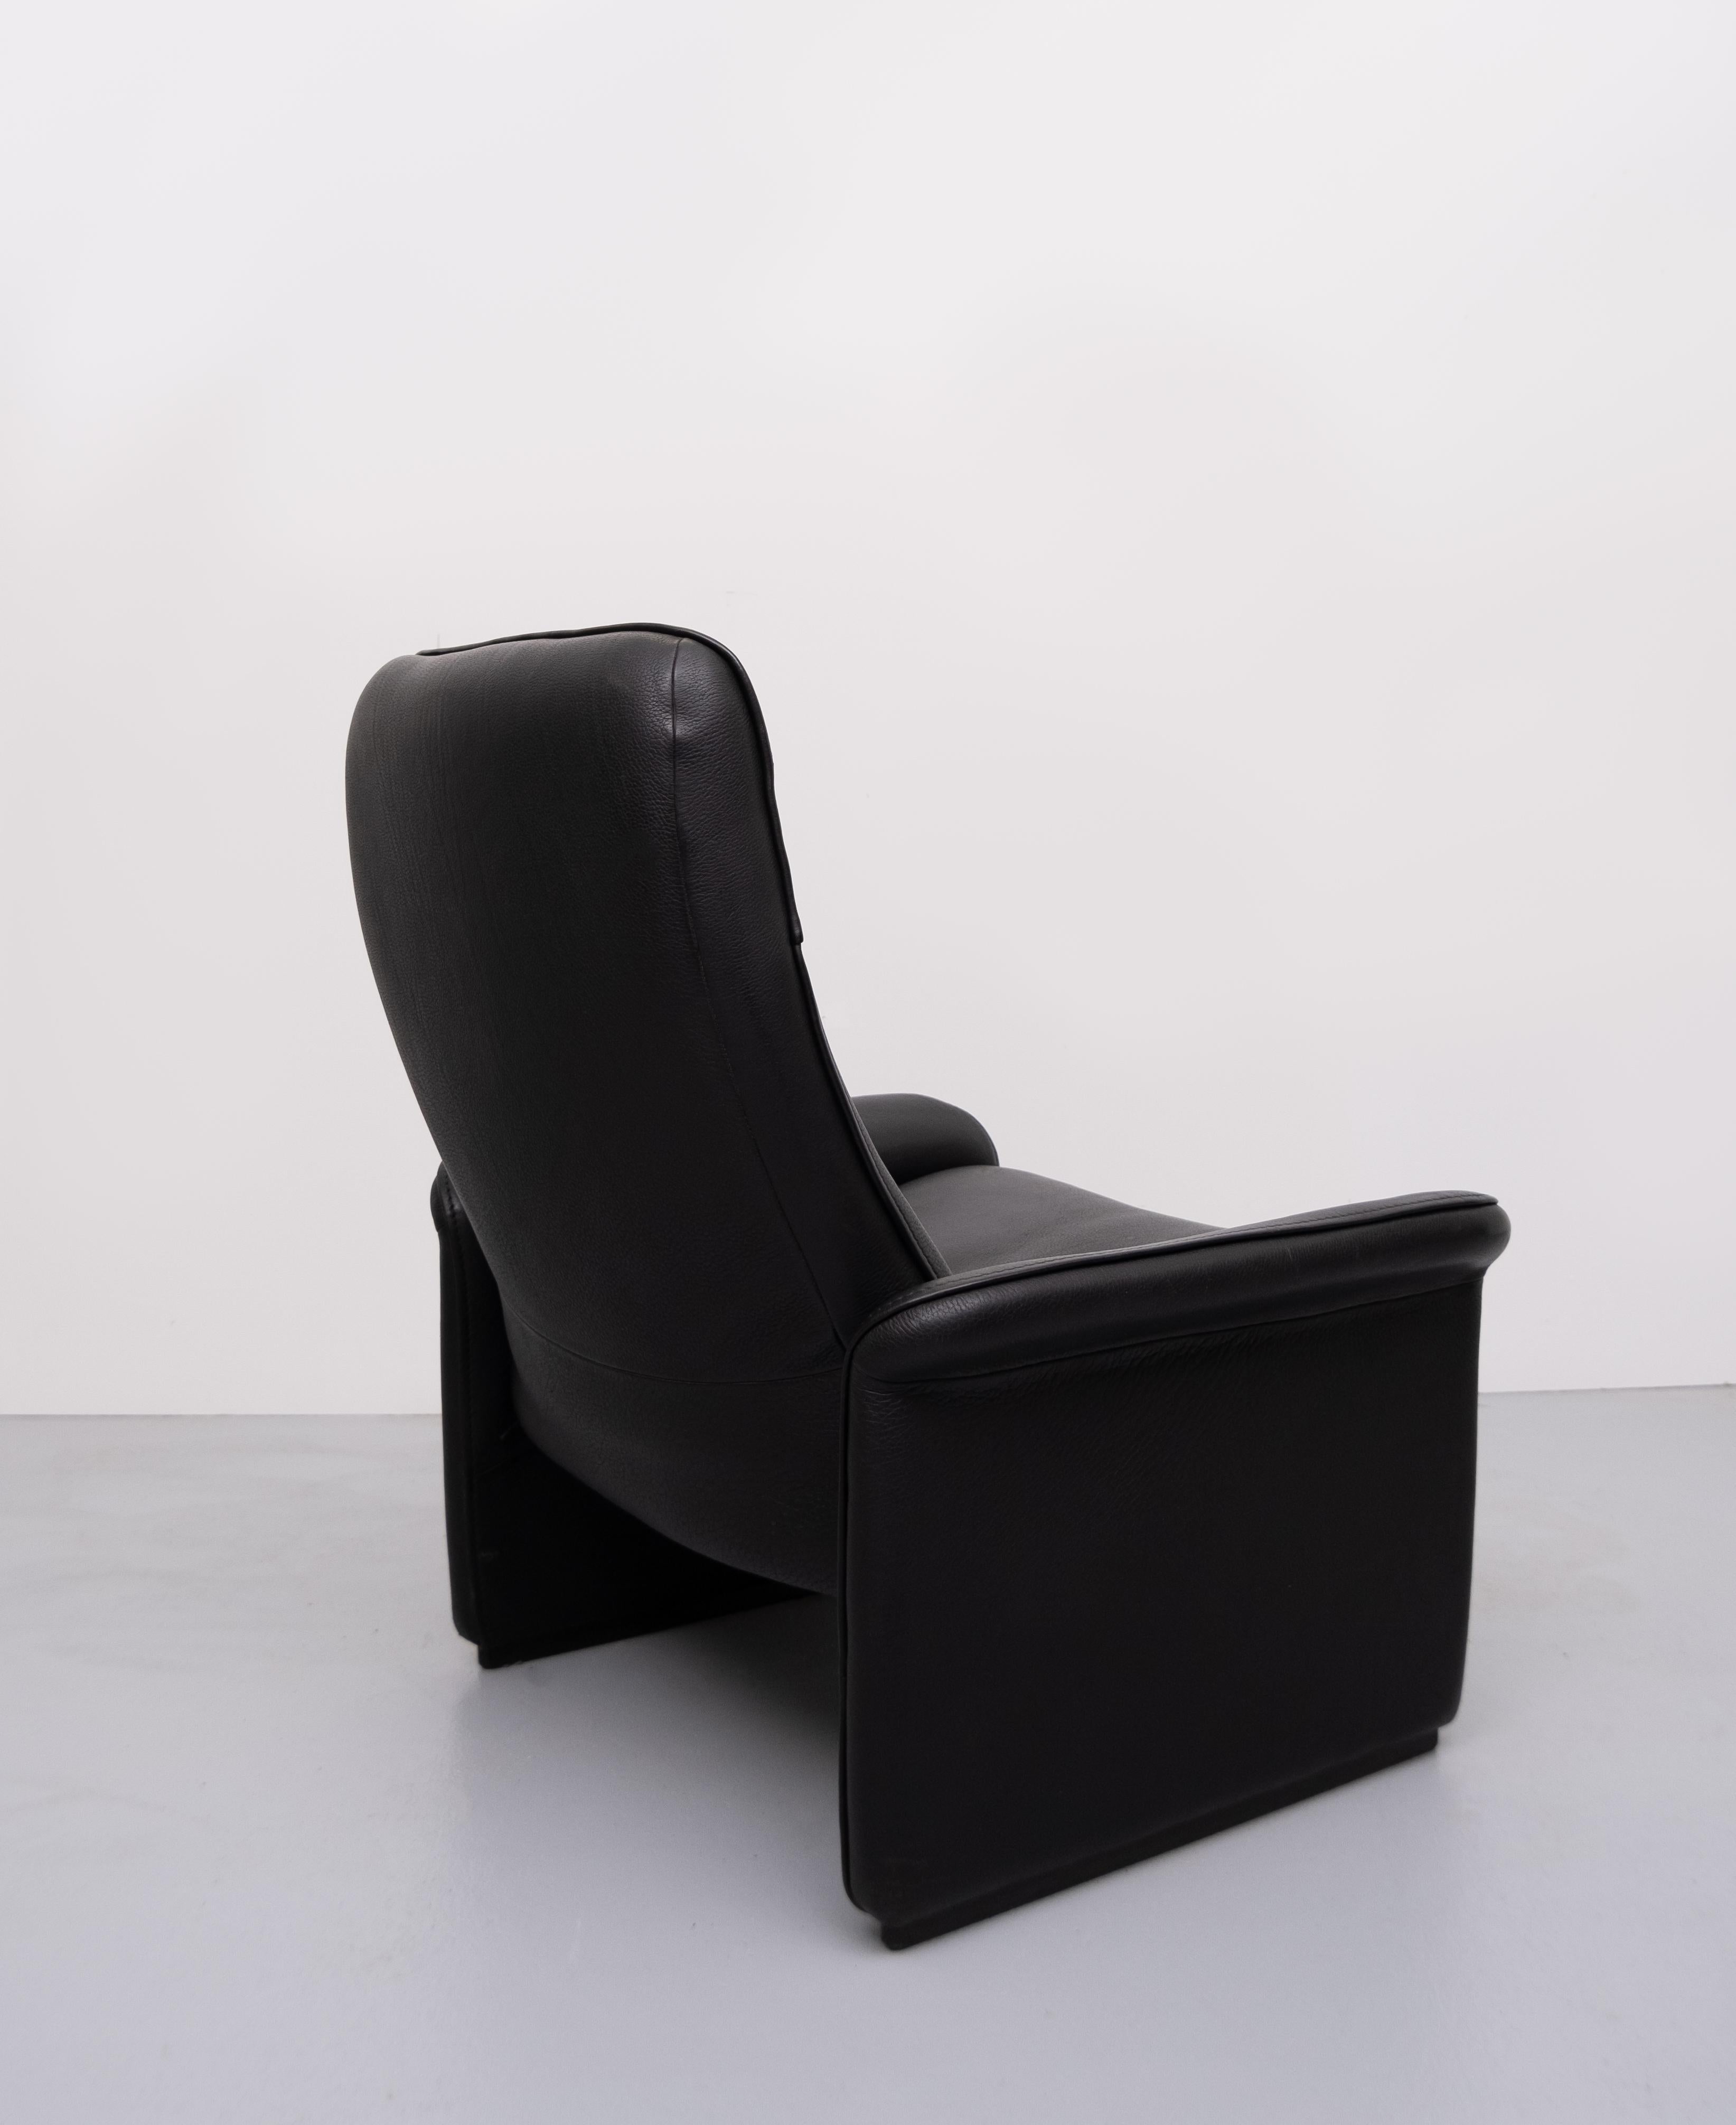 De Sede Black Leather Lounge Chair Model DS-50 2